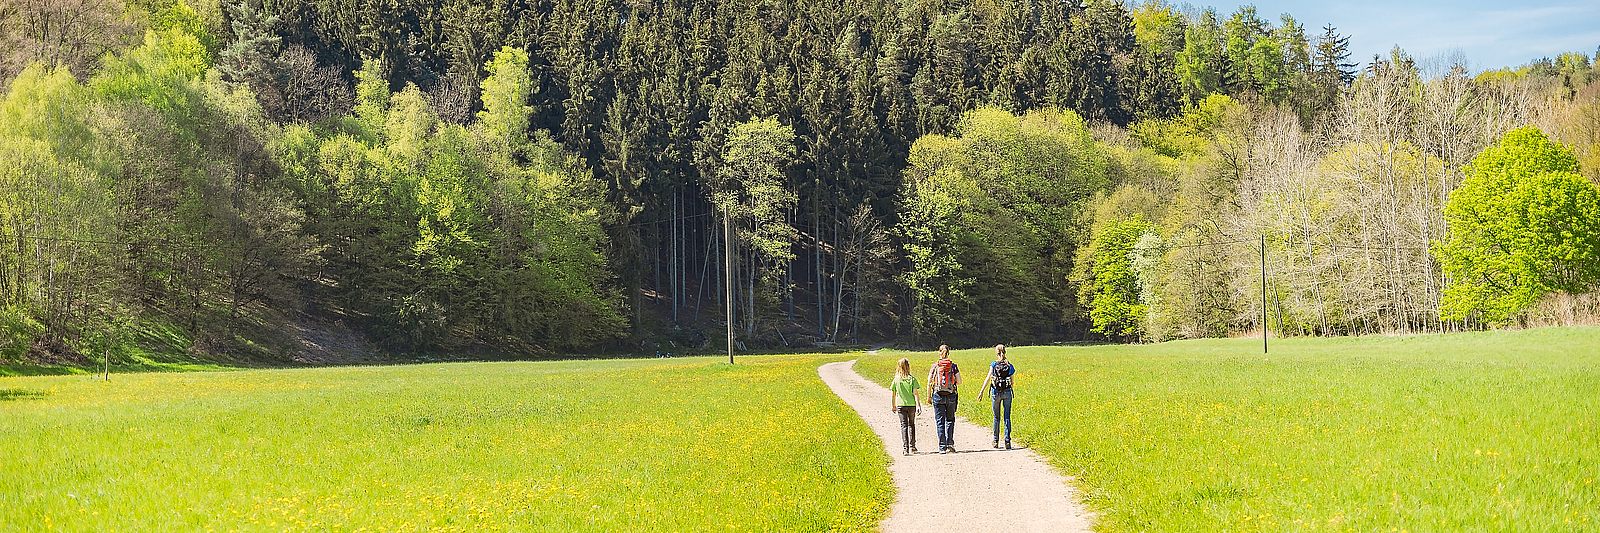 Personen spazieren auf einem Weg durch die Natur.